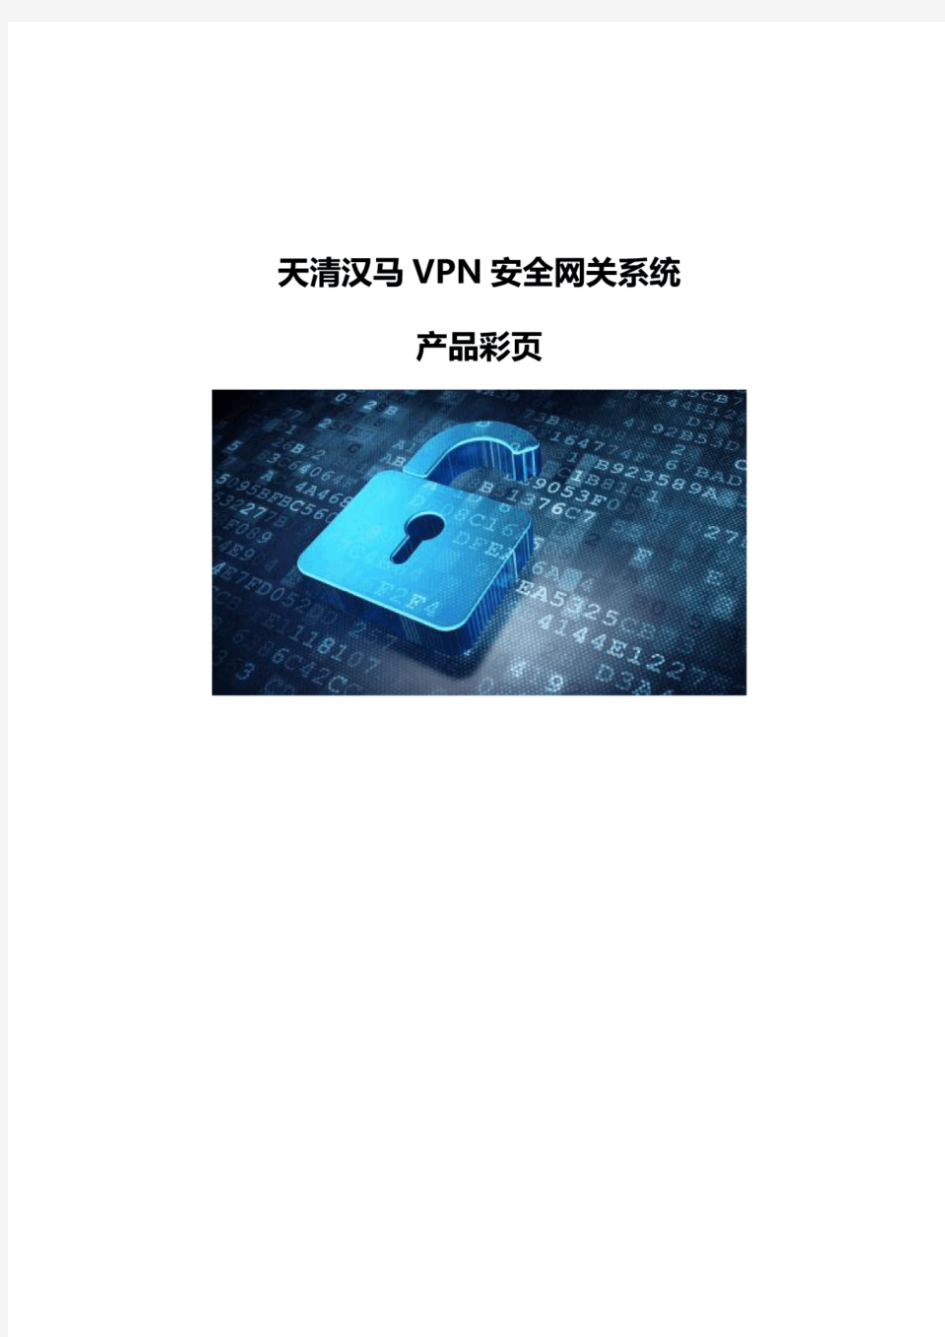 天清汉马VPN安全网关系统产品彩页